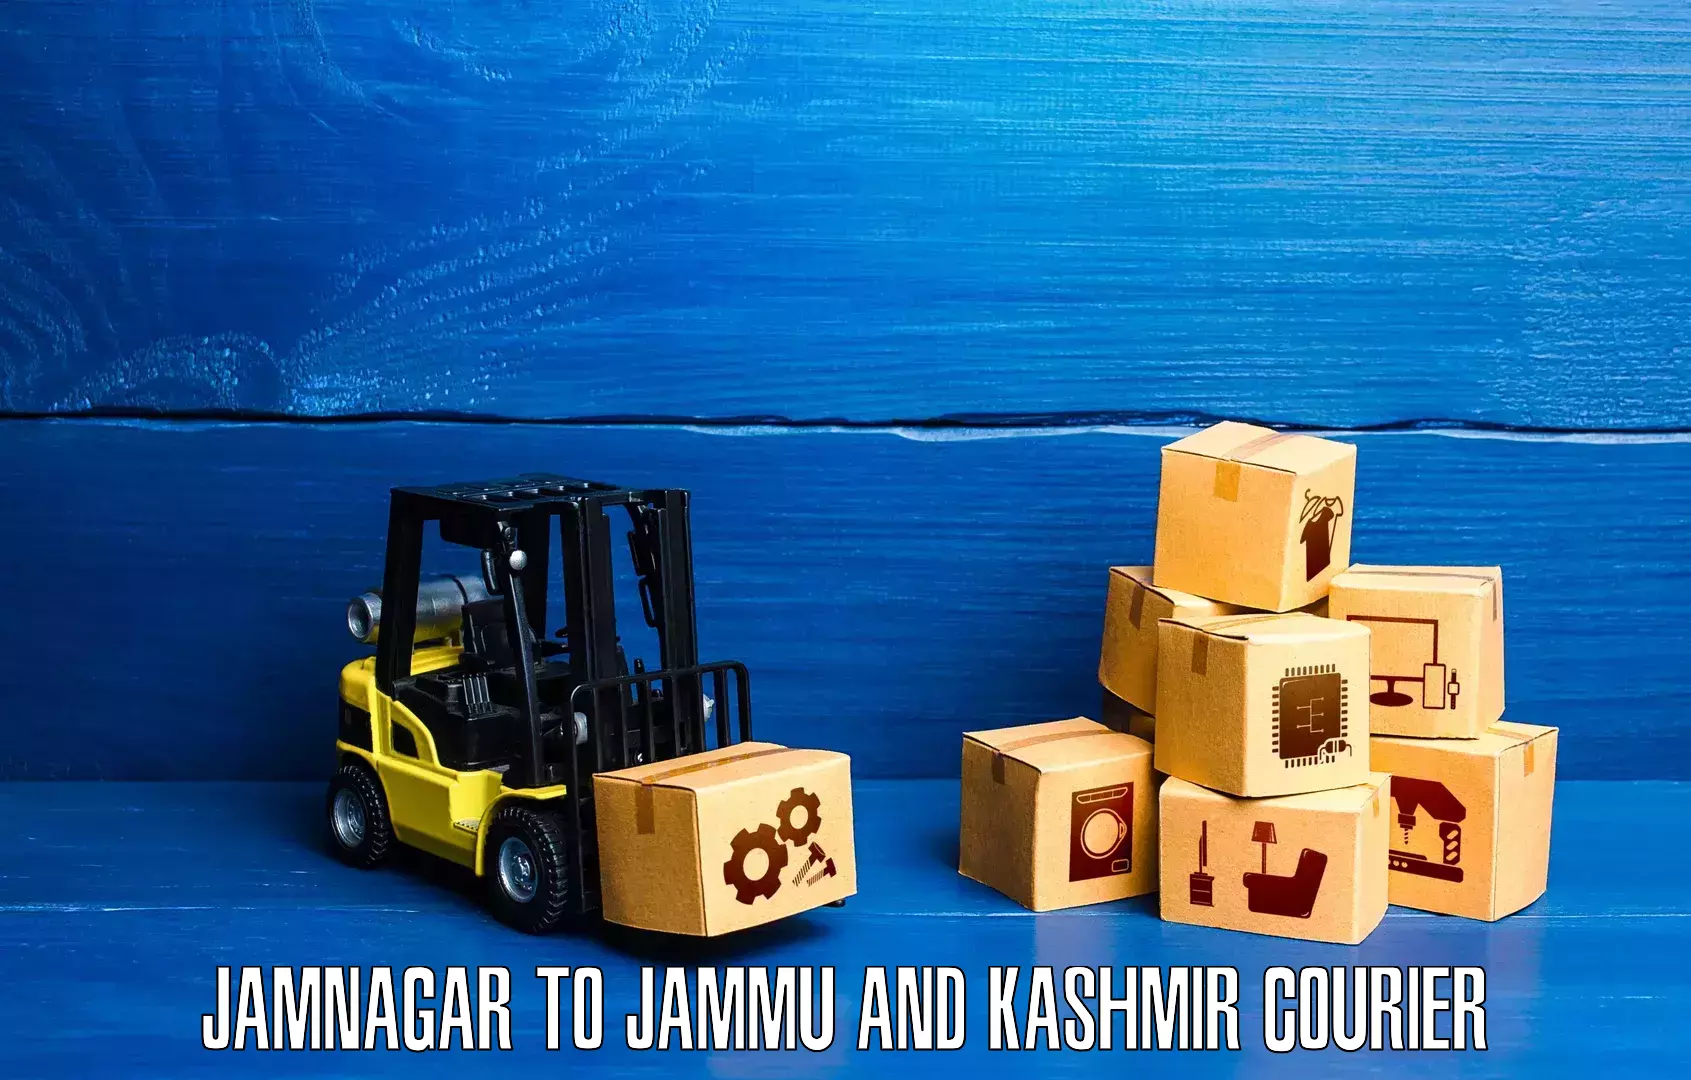 Express package services Jamnagar to Jammu and Kashmir